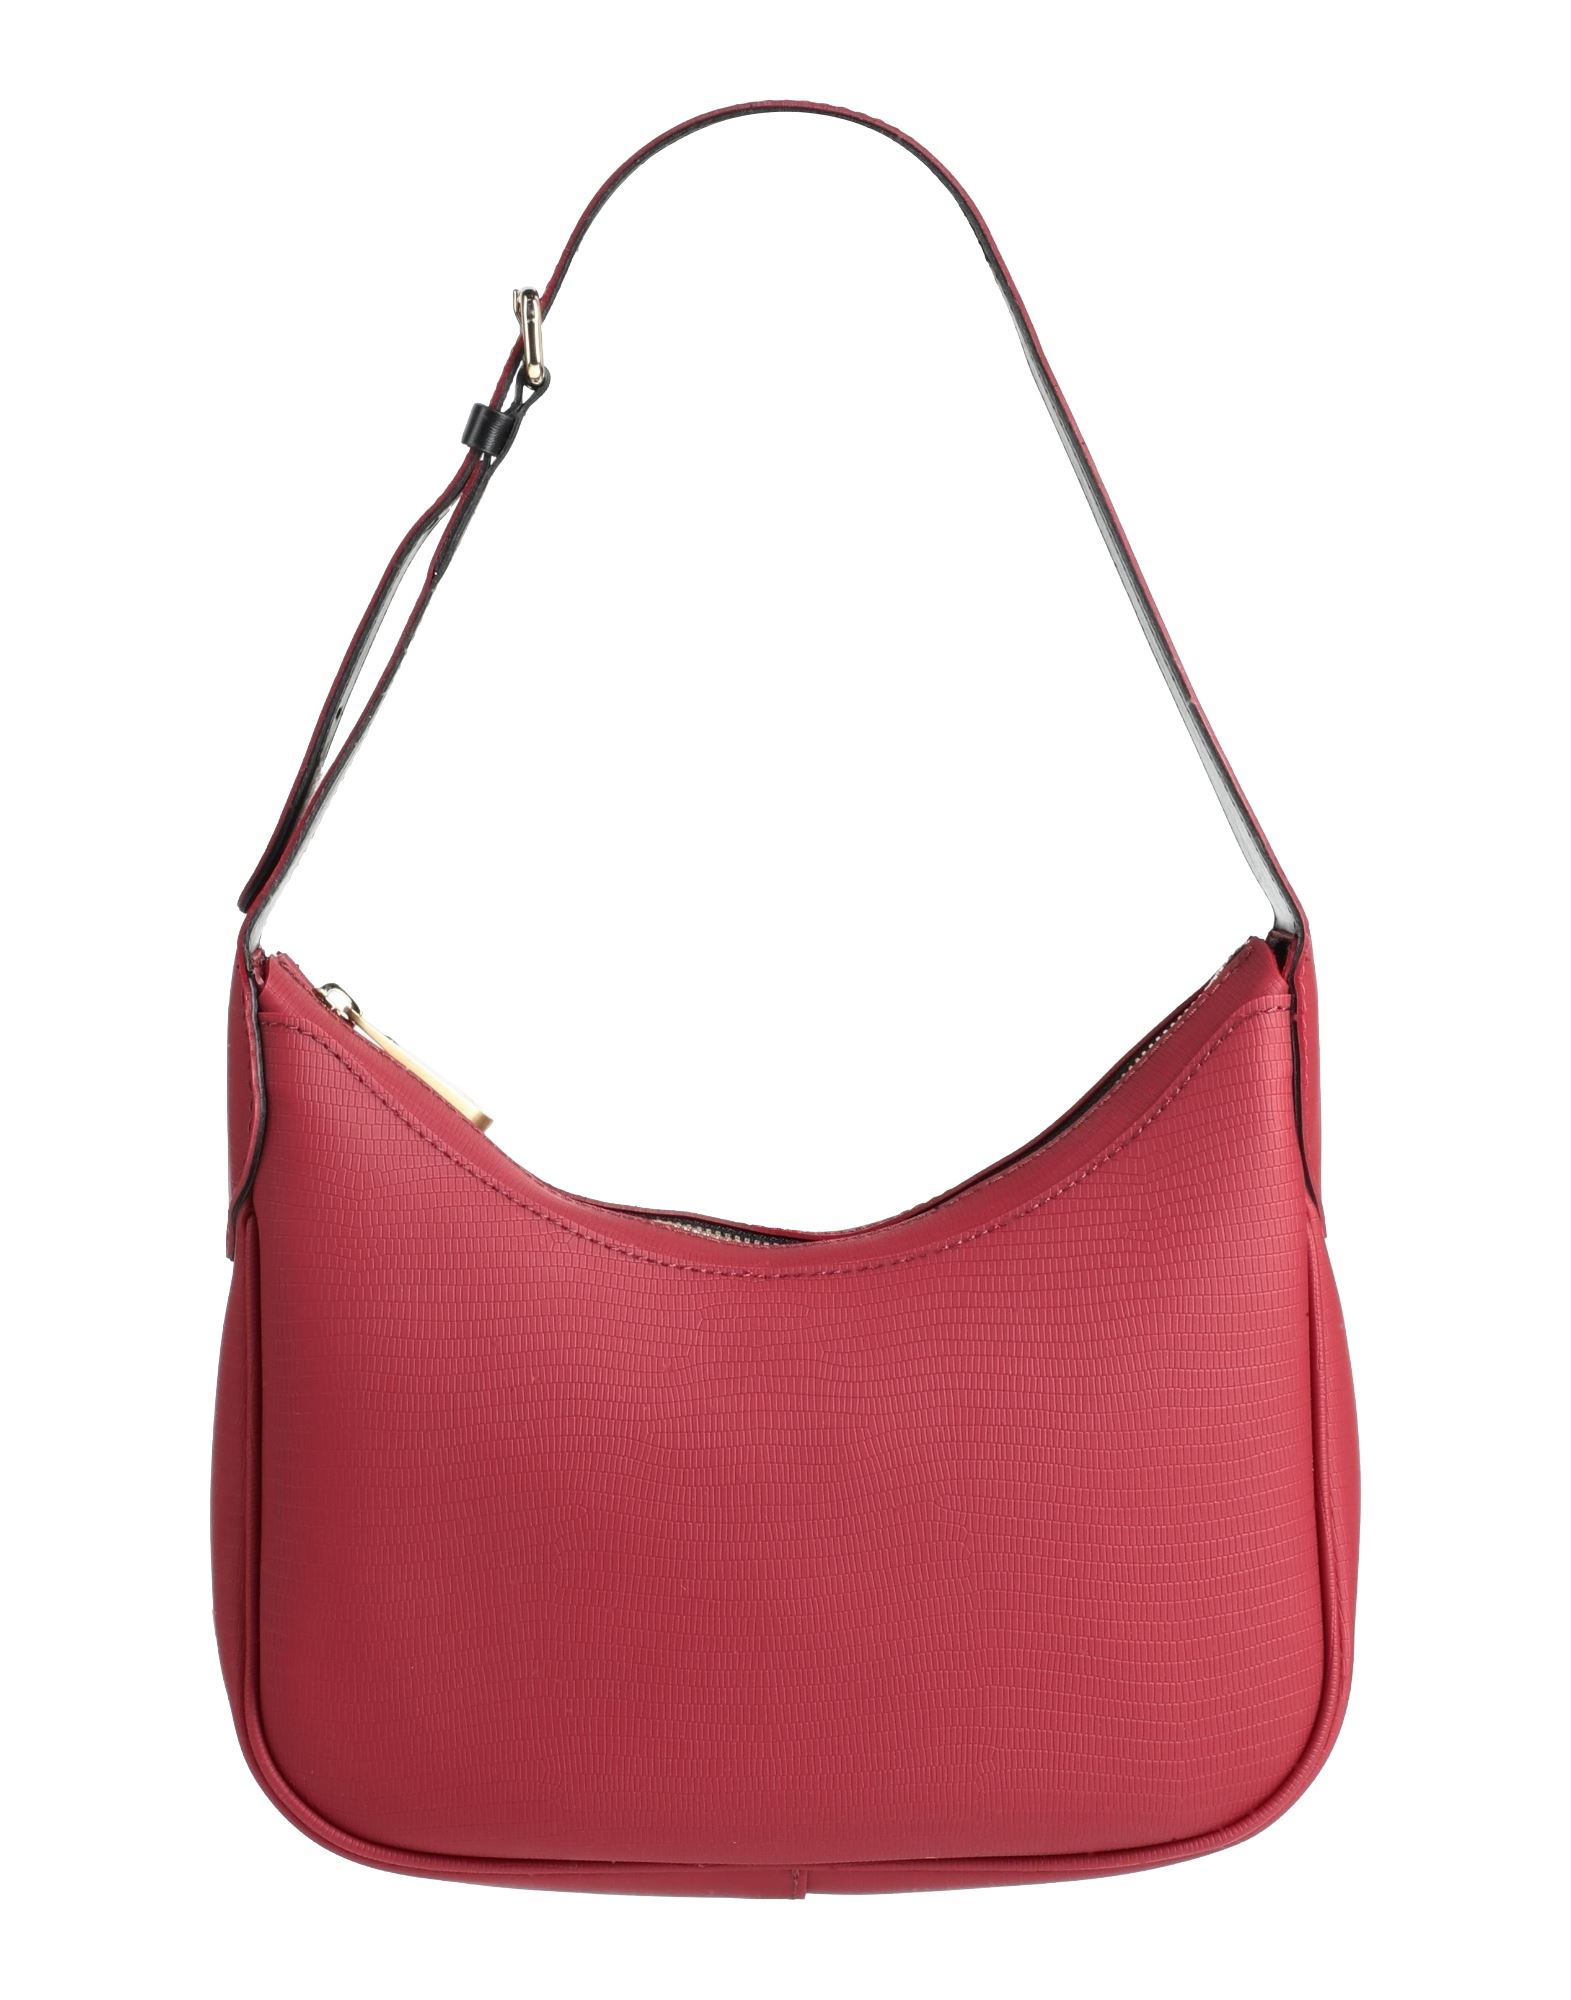 Gum Design Handbags In Red